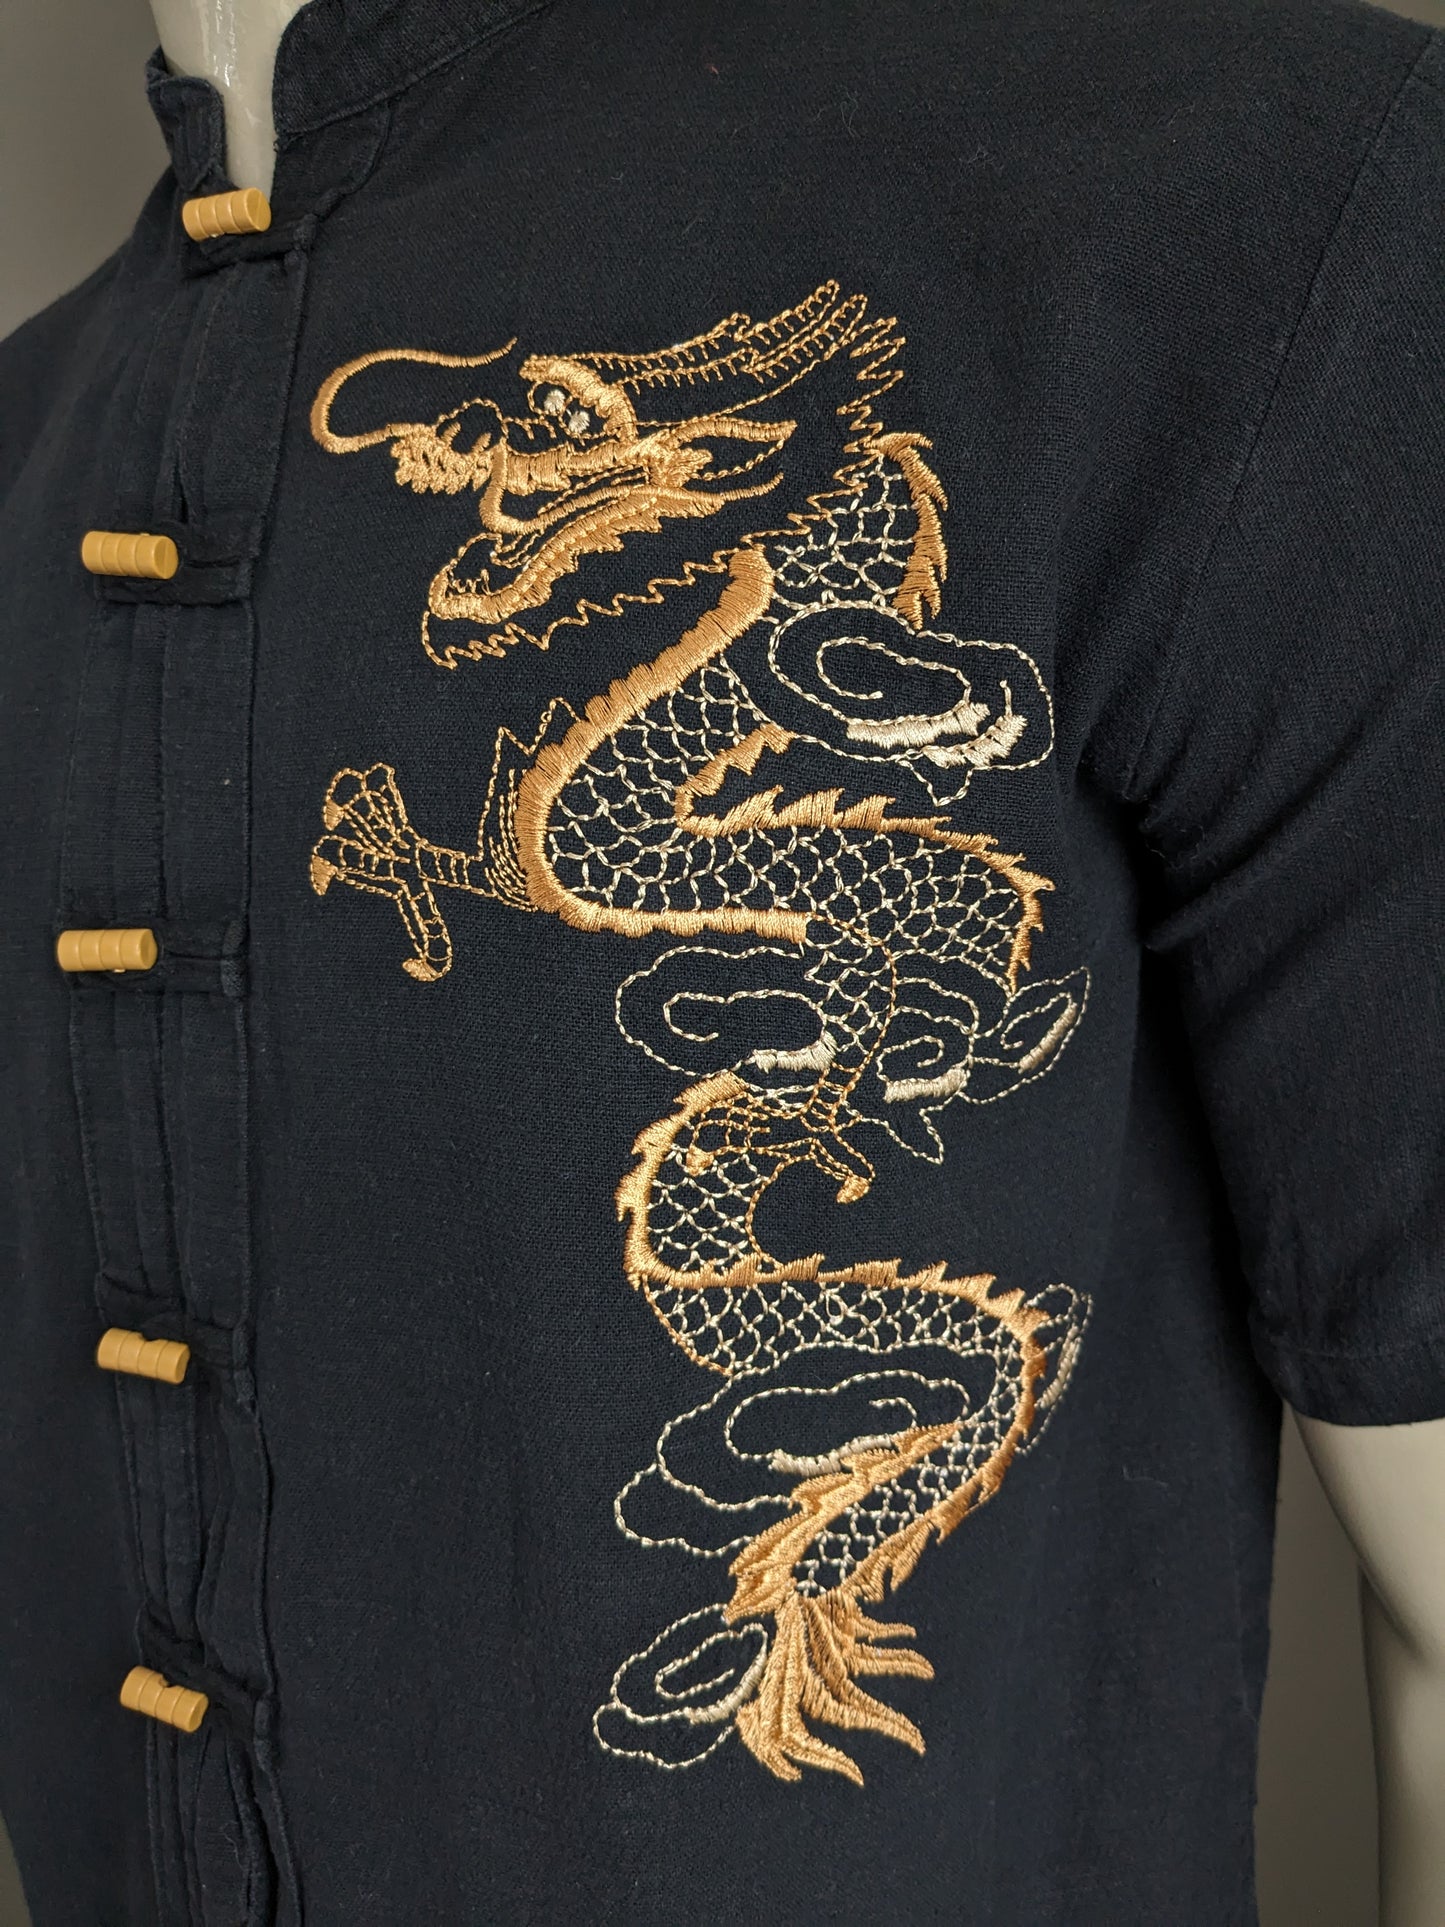 Camisa de Razia vintage manga corta con mao / agricultor / cuello elevado. Negro con dragón bordado. Talla L.